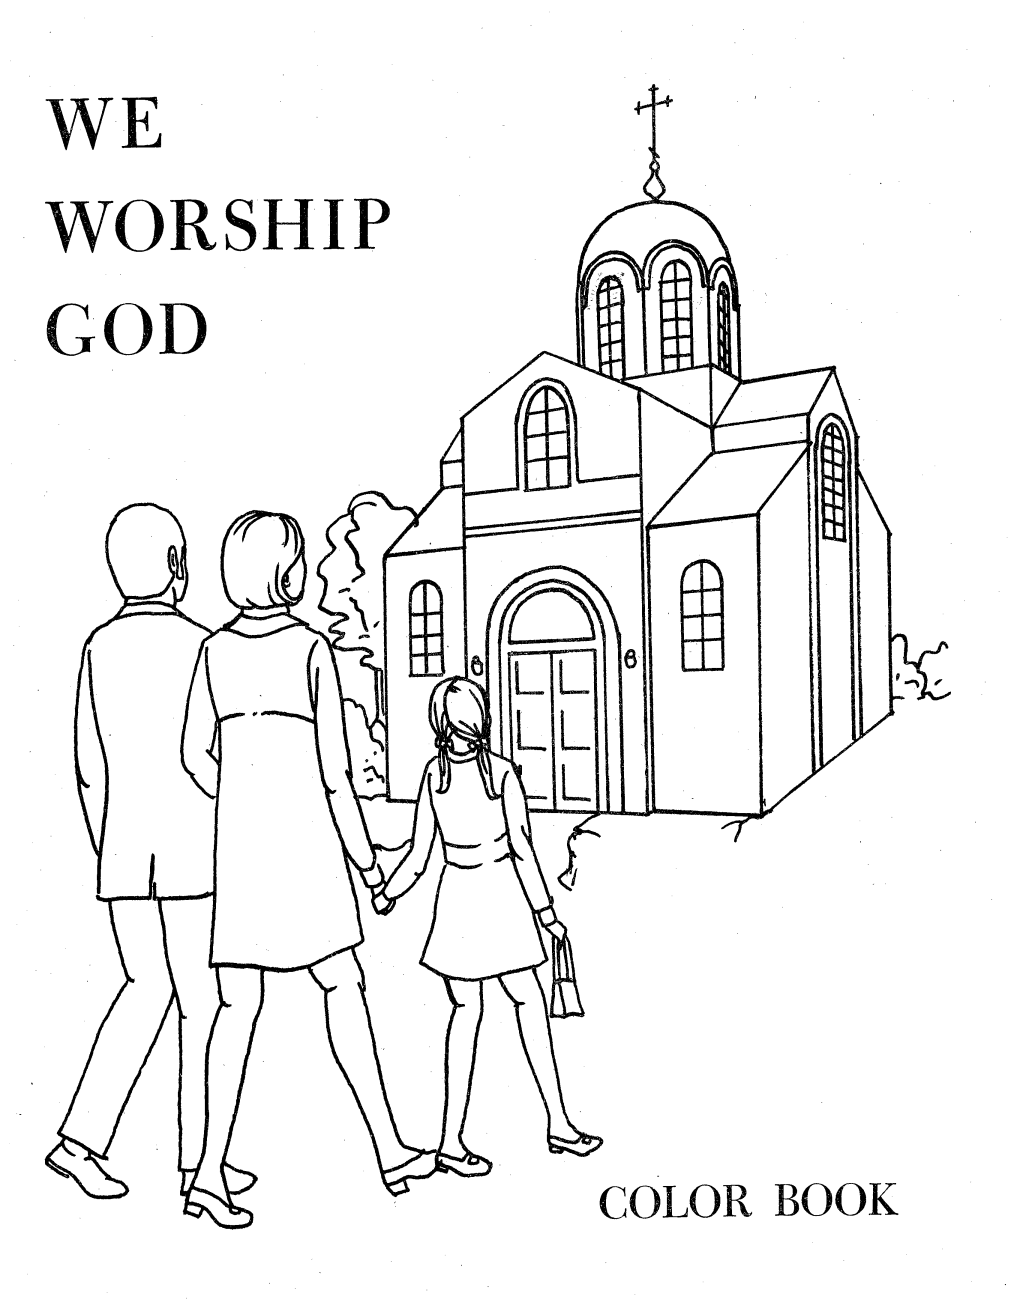 We Worship God